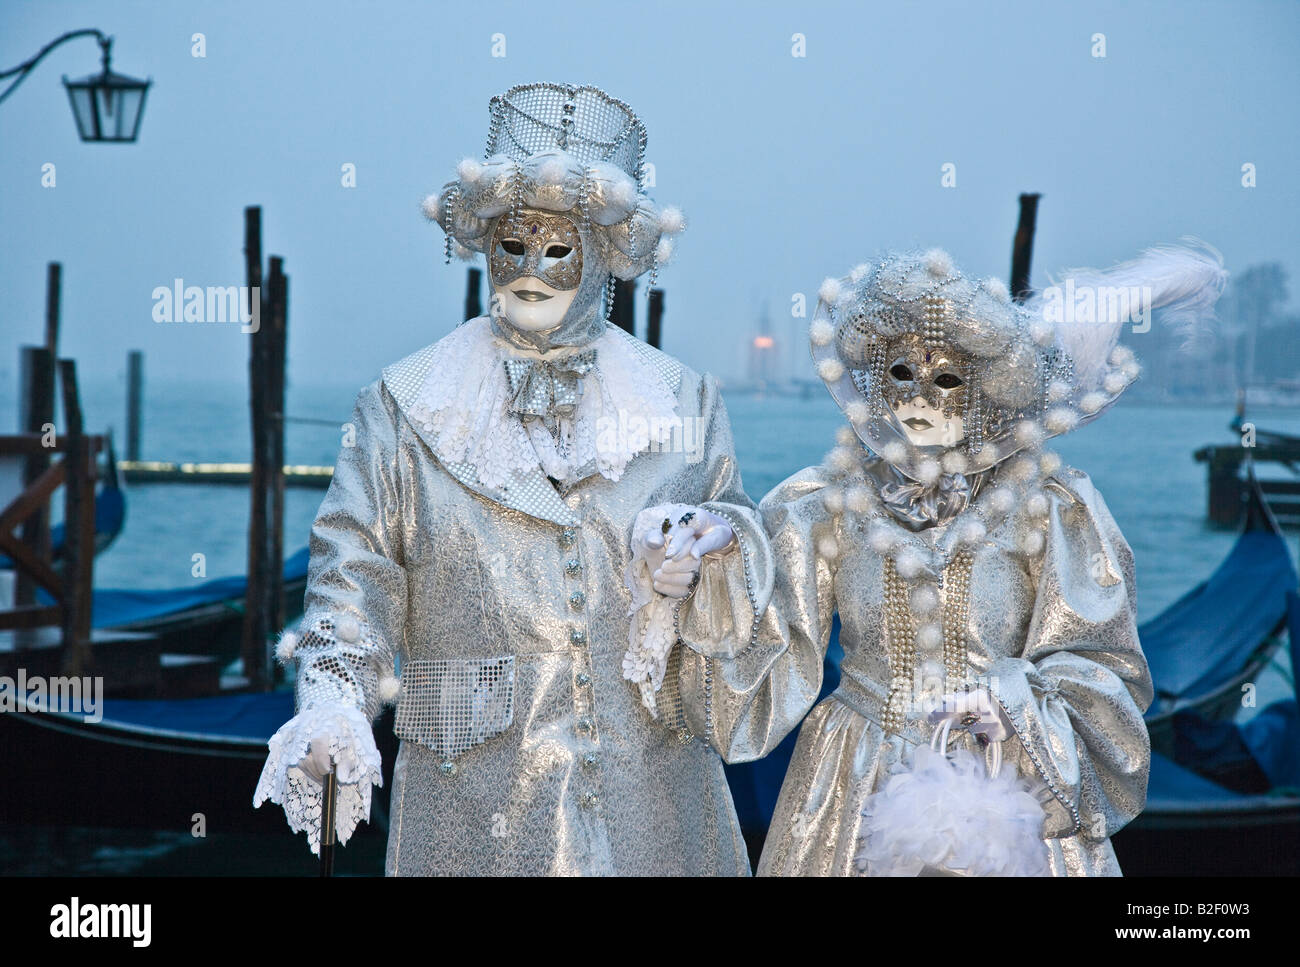 Carnaval de Venise participants costumés Banque D'Images